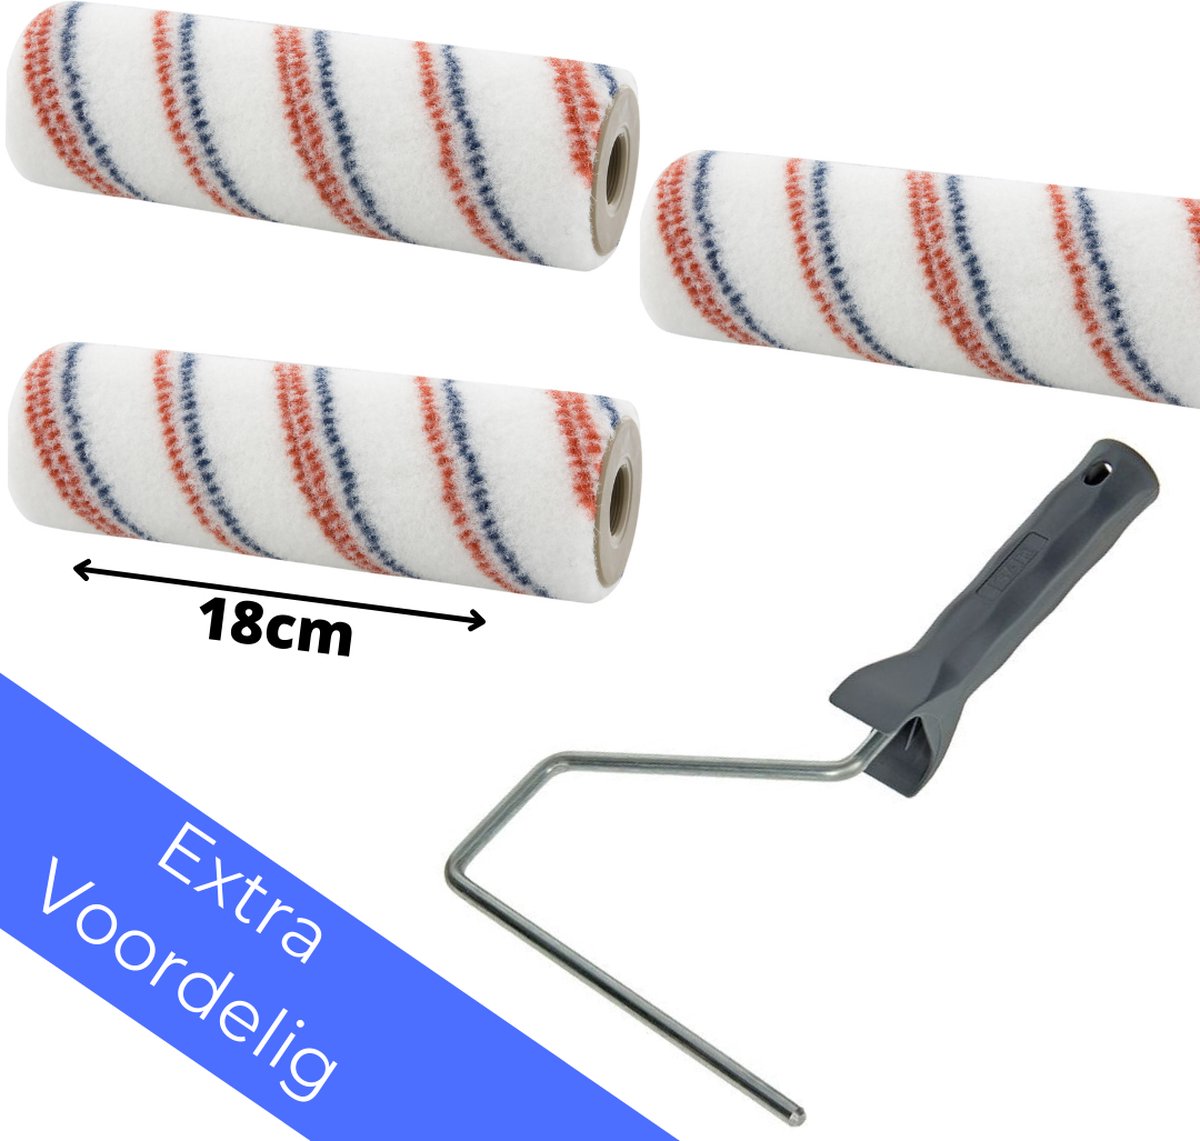 Actie Vloer Roller Set - 3 Copenhagen Prof Nylon Rollers 18 cm + Beugel